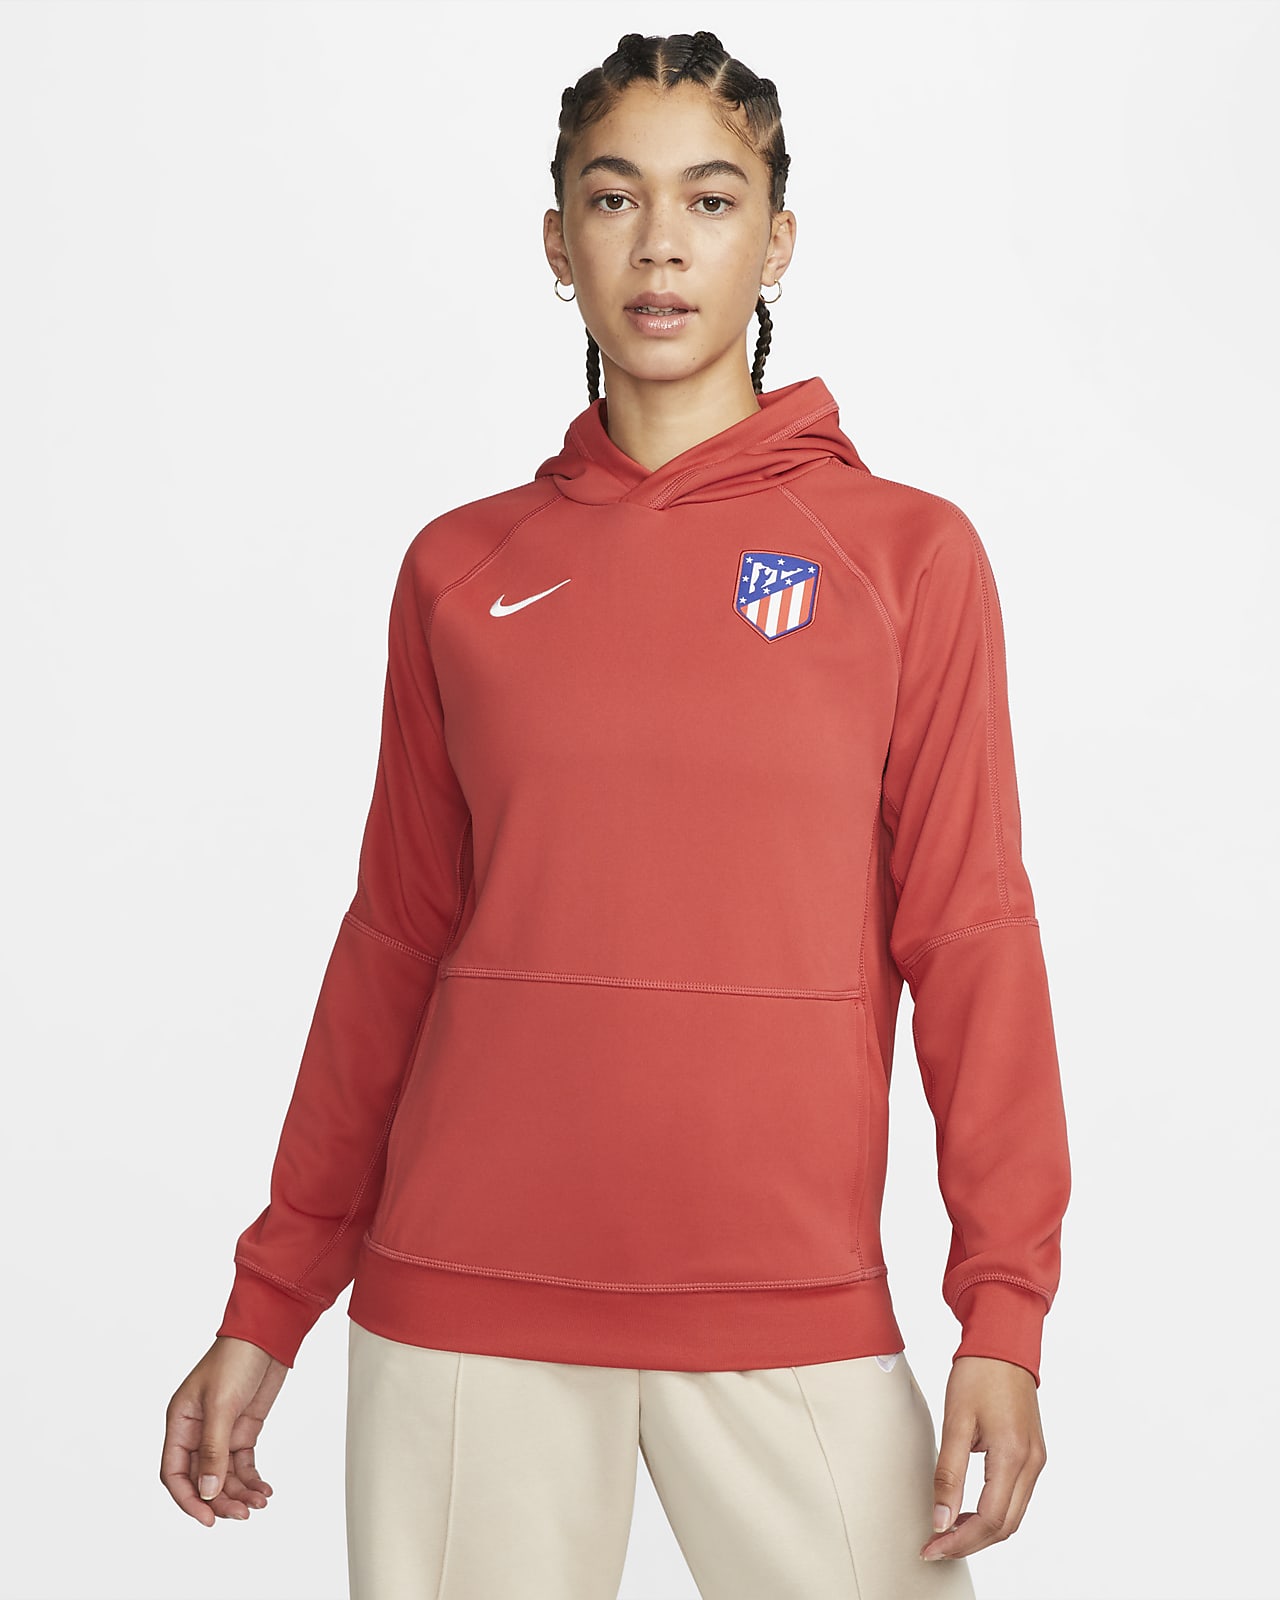 Damska bluza z kapturem wkładana przez głowę Nike Dri-FIT Atlético Madryt